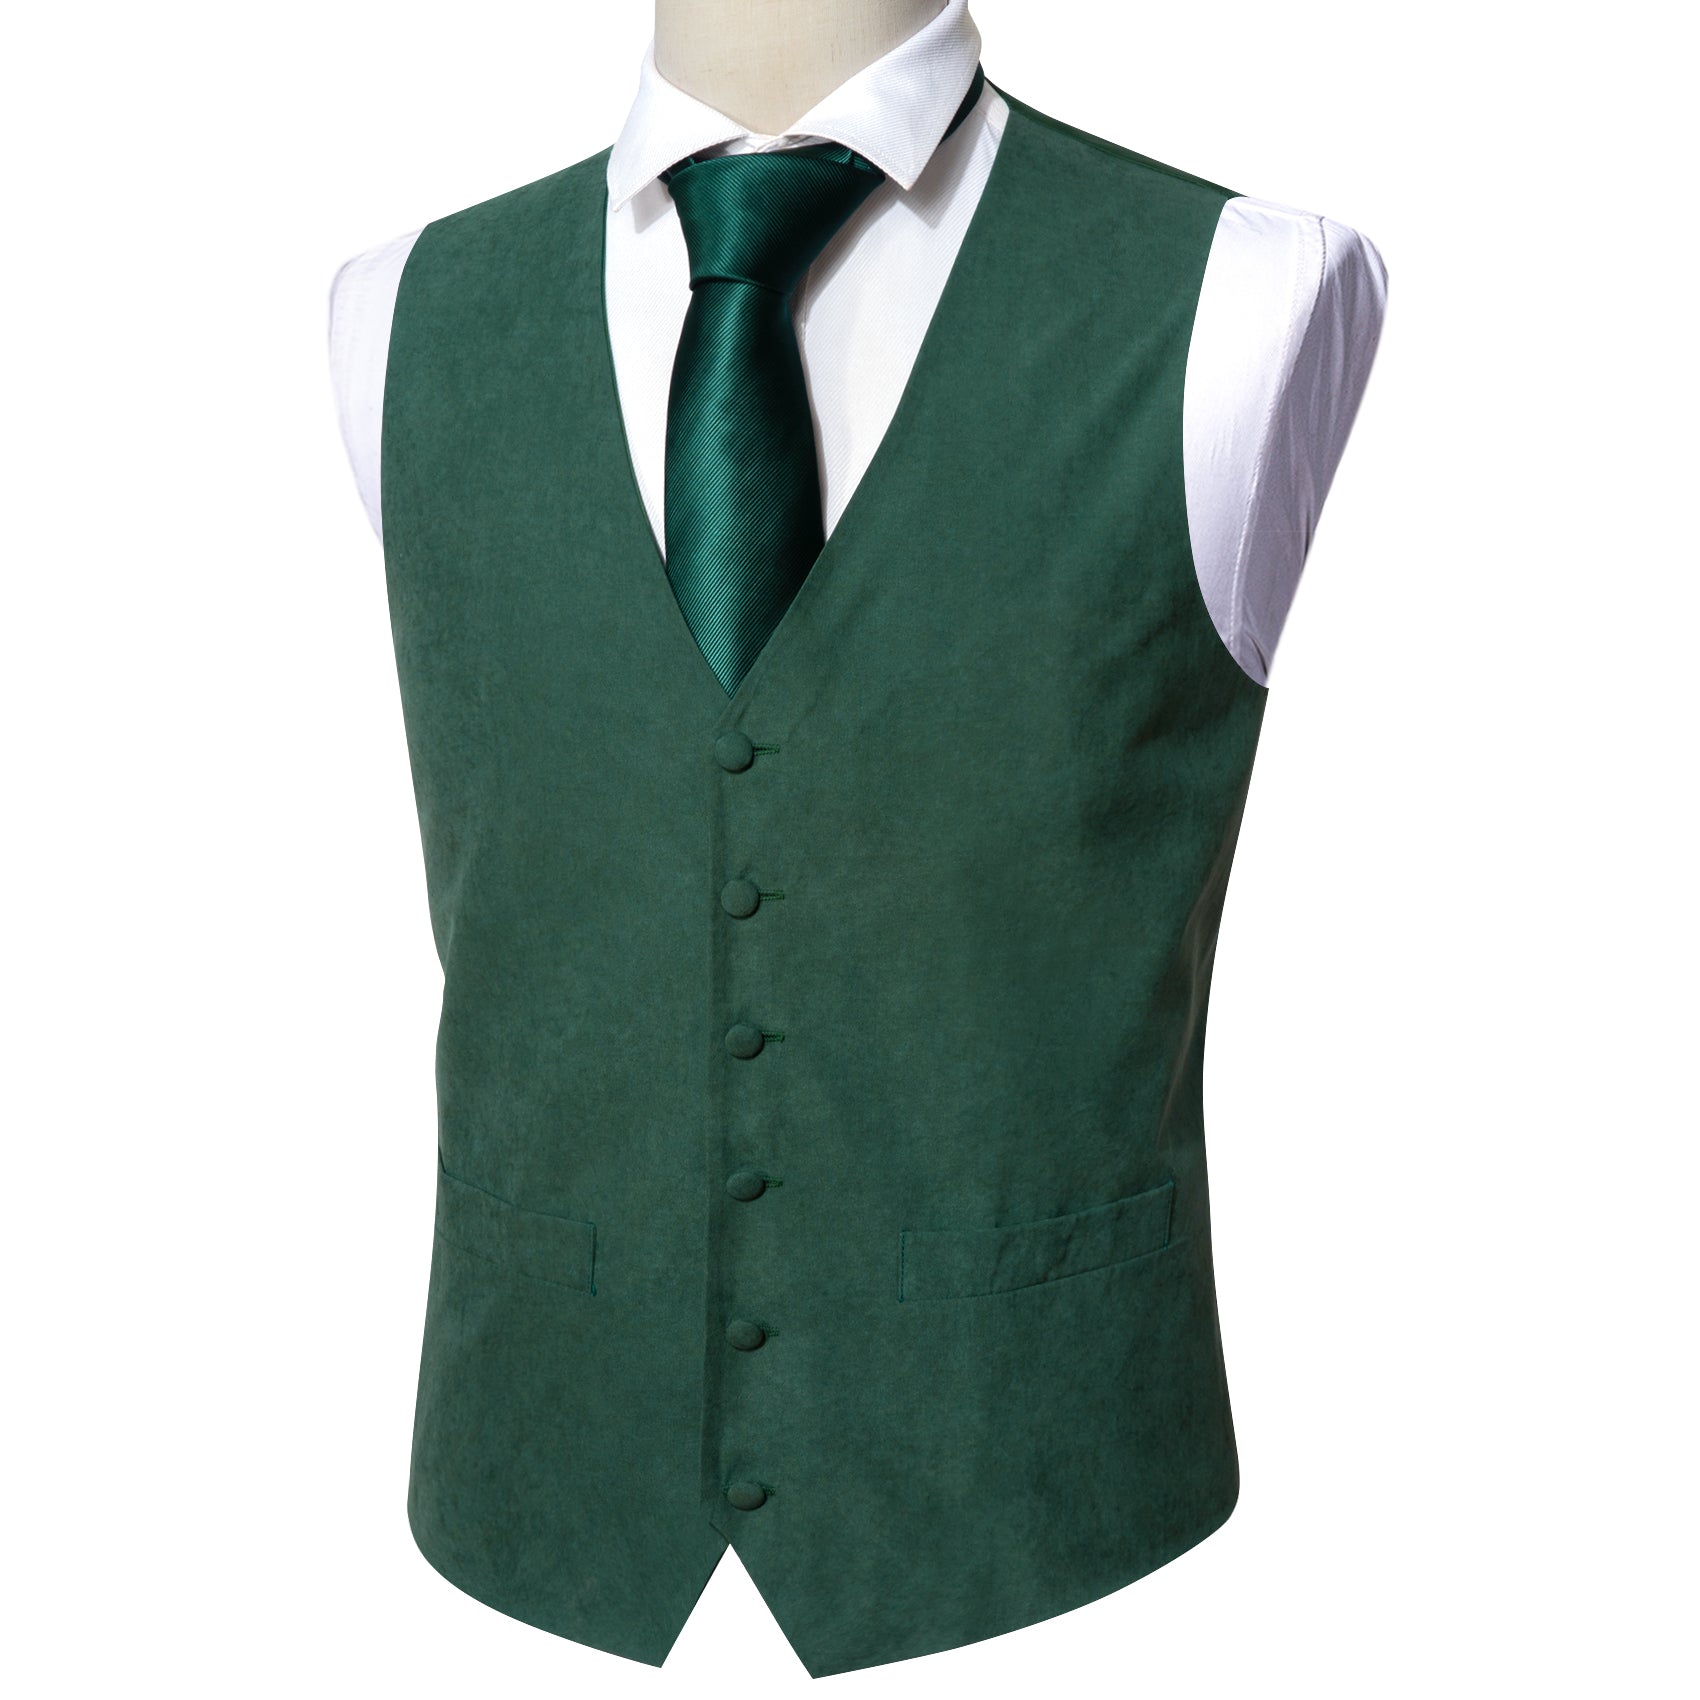 olive green vest